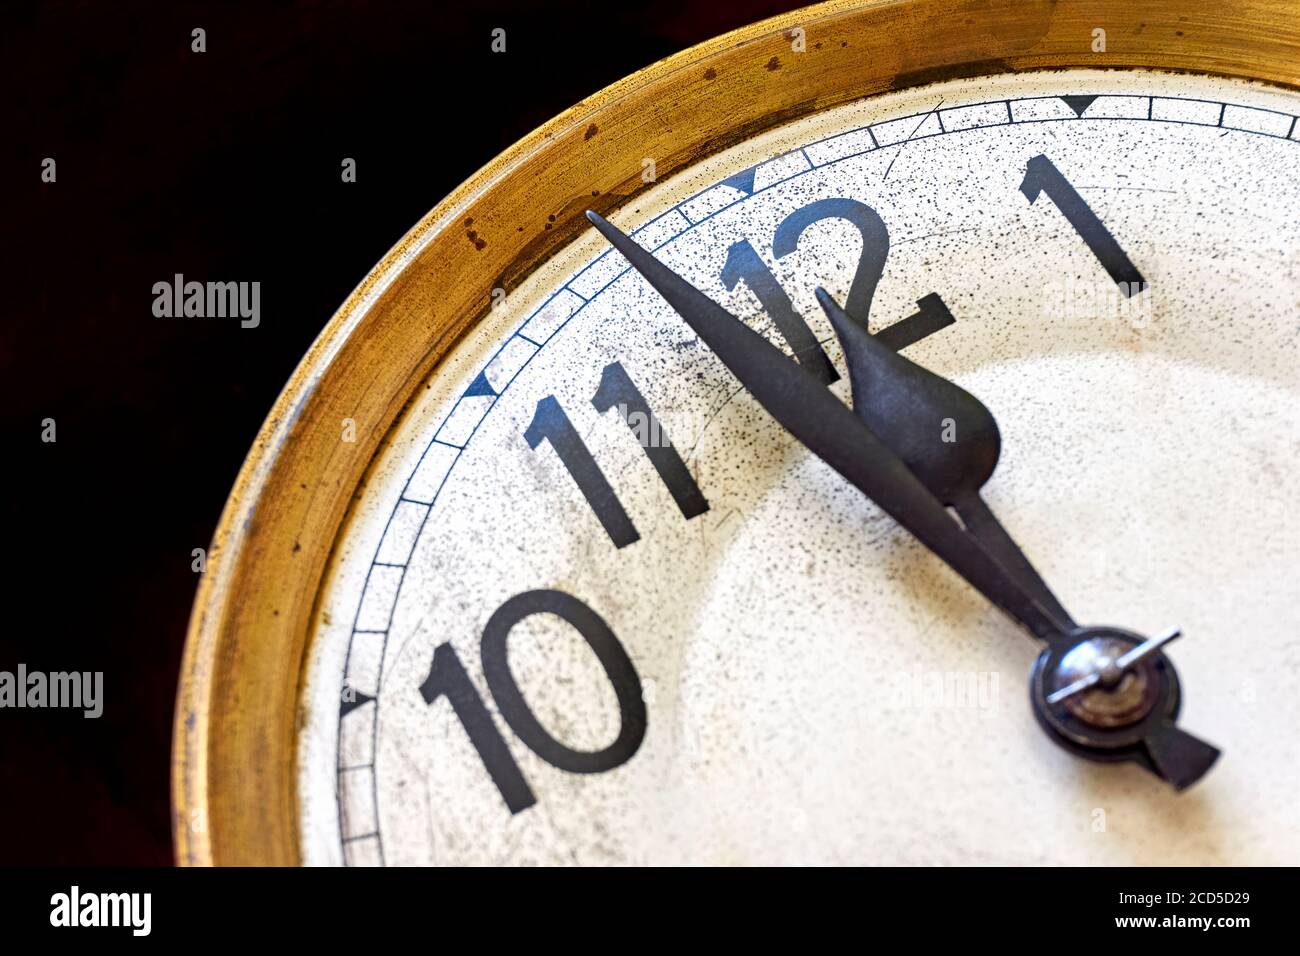 L'horloge ancienne affiche 2 minutes à 12 heures sur fond noir. Concept de la veille du nouvel an ou du compte à rebours. Banque D'Images